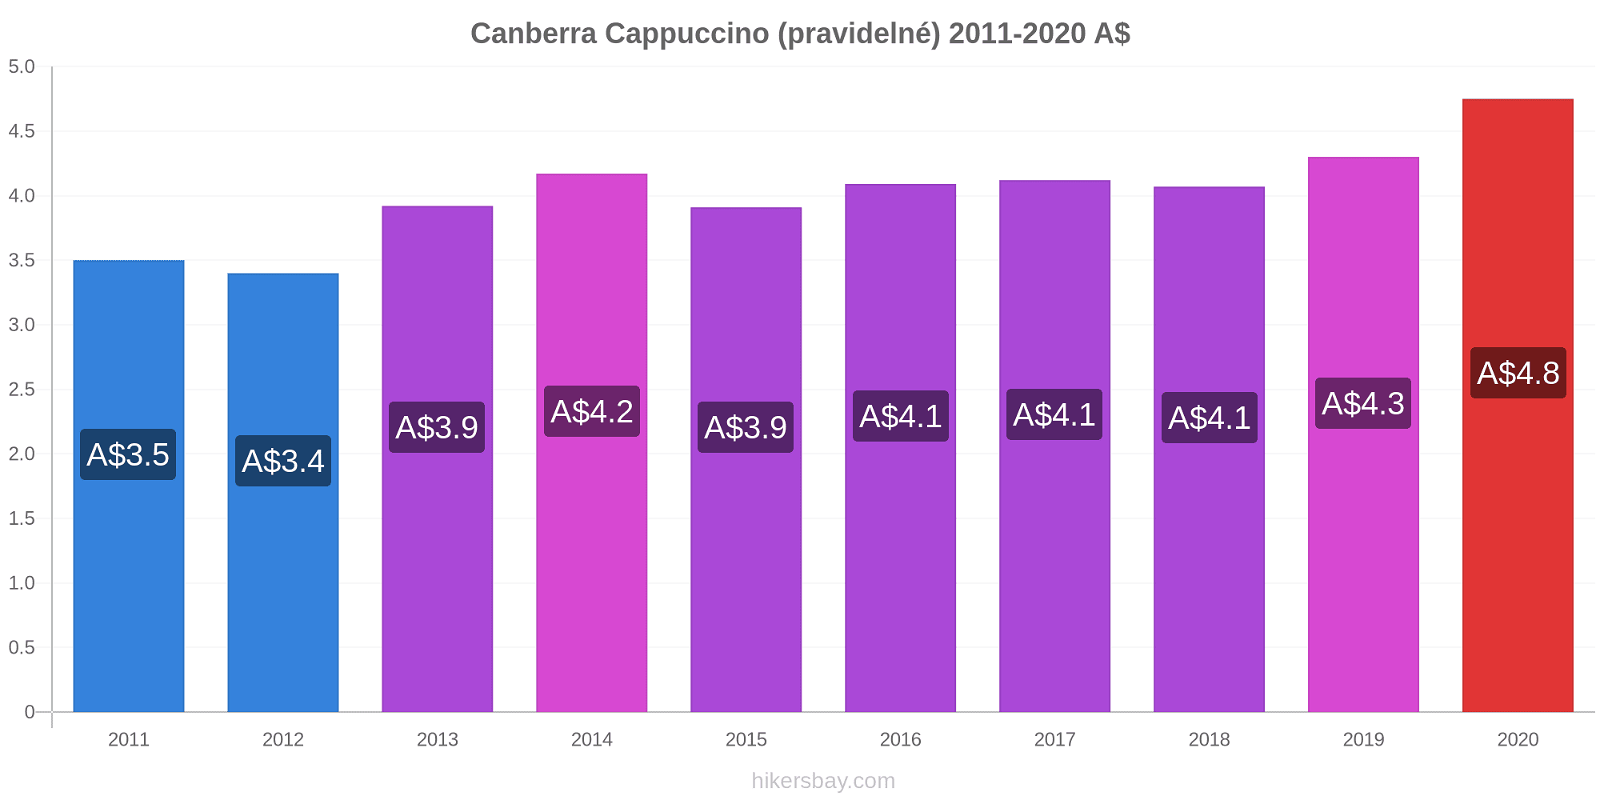 Canberra změny cen Cappuccino (pravidelné) hikersbay.com